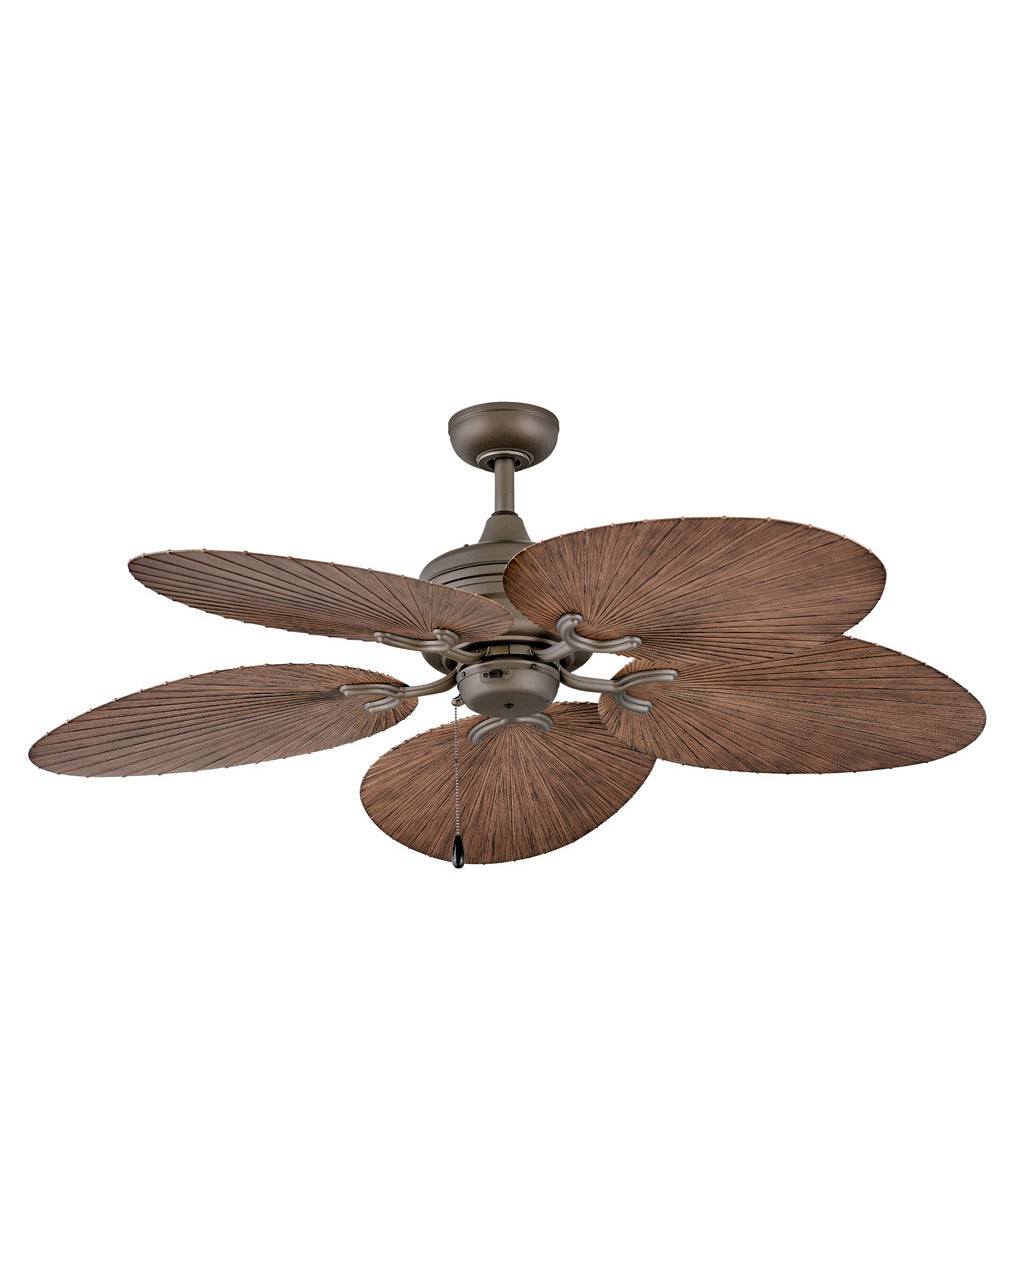 Hinkley Tropic Air Fan Outdoor Fan Hinkley 52 Metallic Matte Bronze Walnut